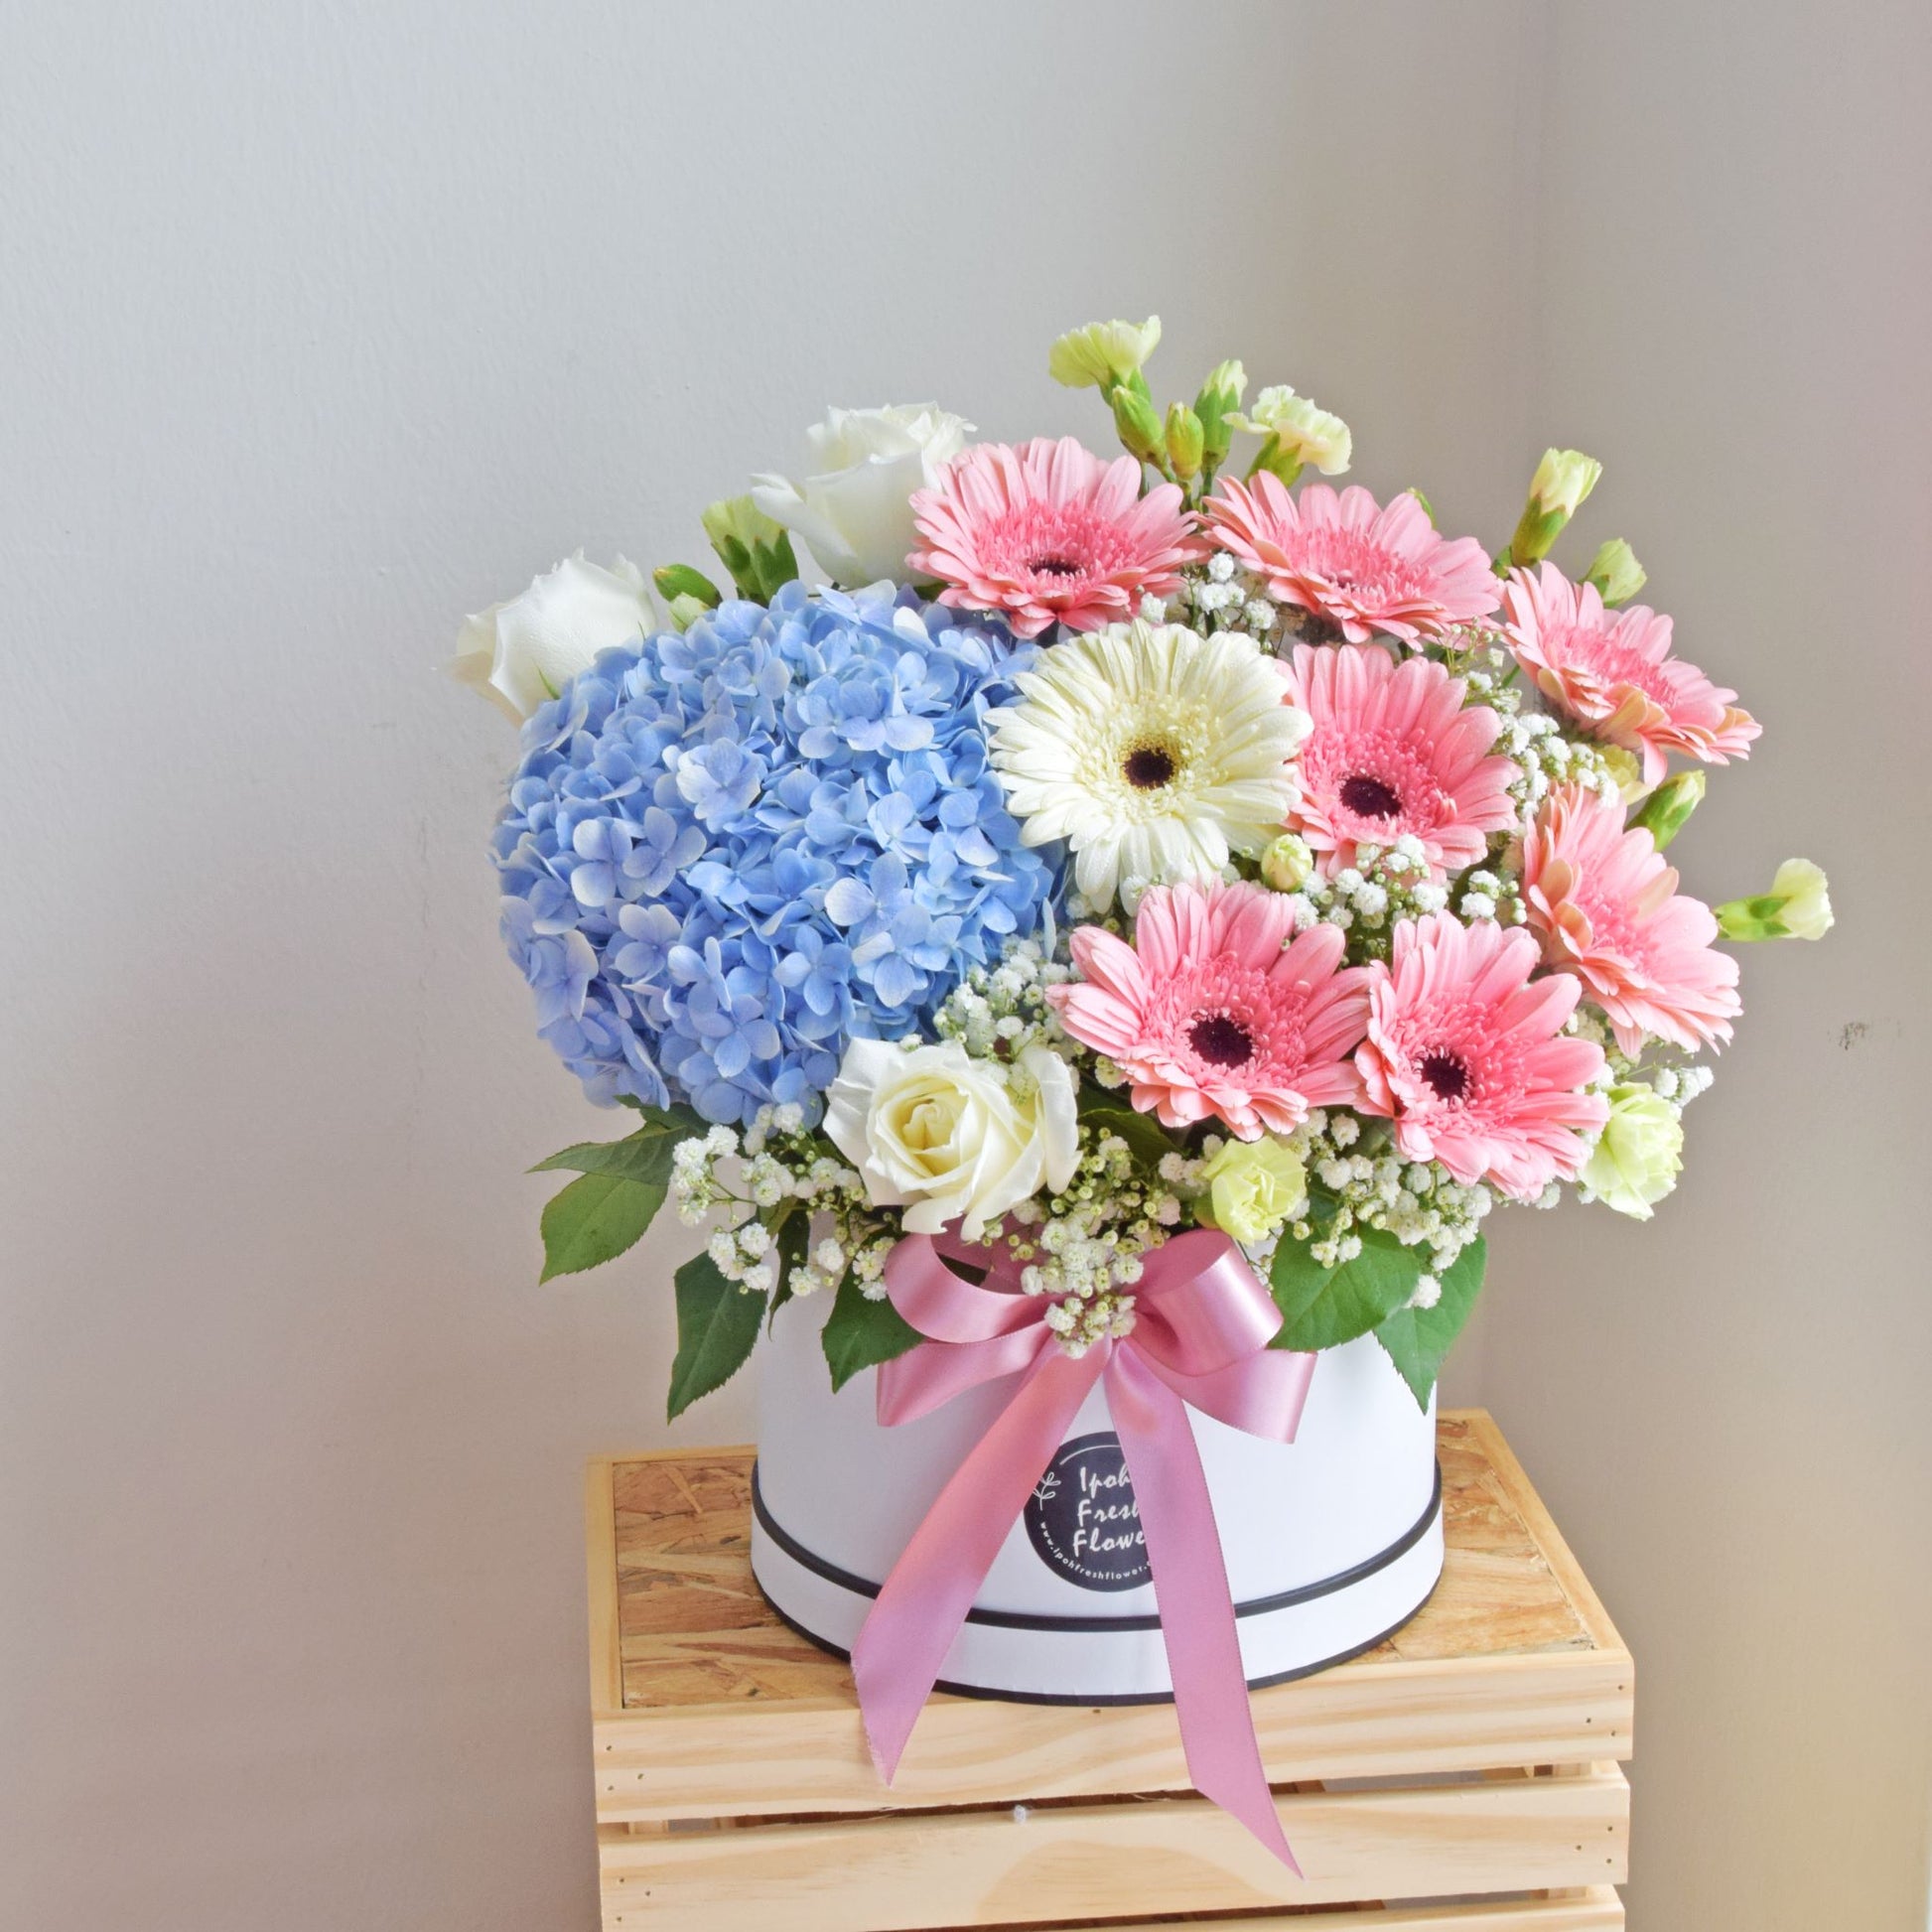 Margaret| Fresh Flower Bloom Box